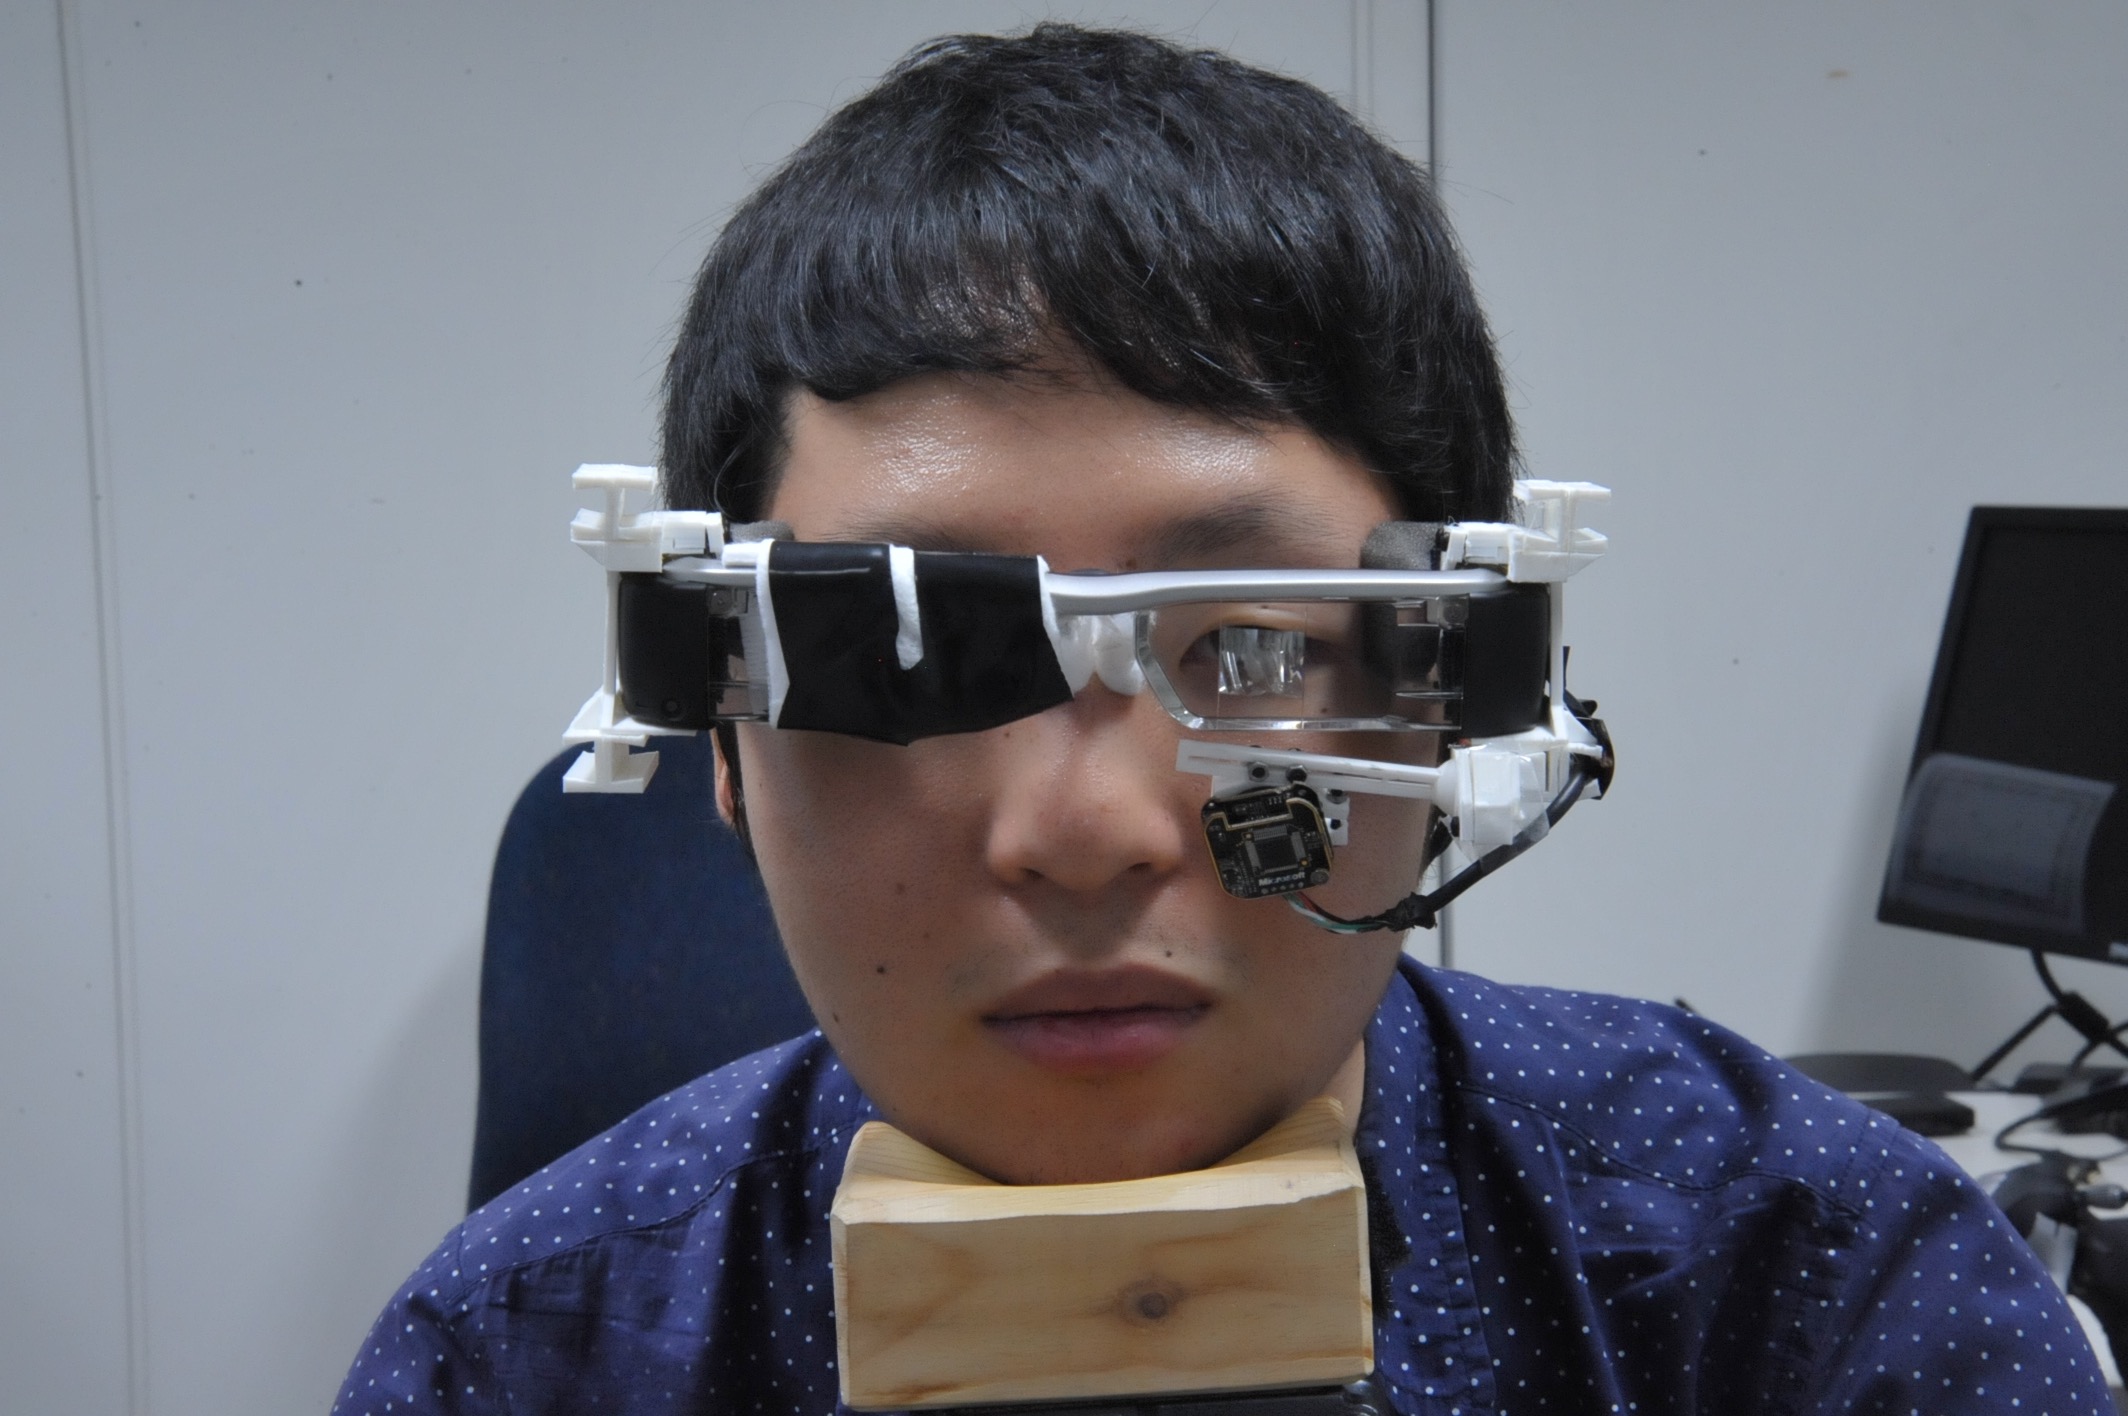 ユーザの目のピント位置を考慮したAR映像の生成技術に関する実験の様子